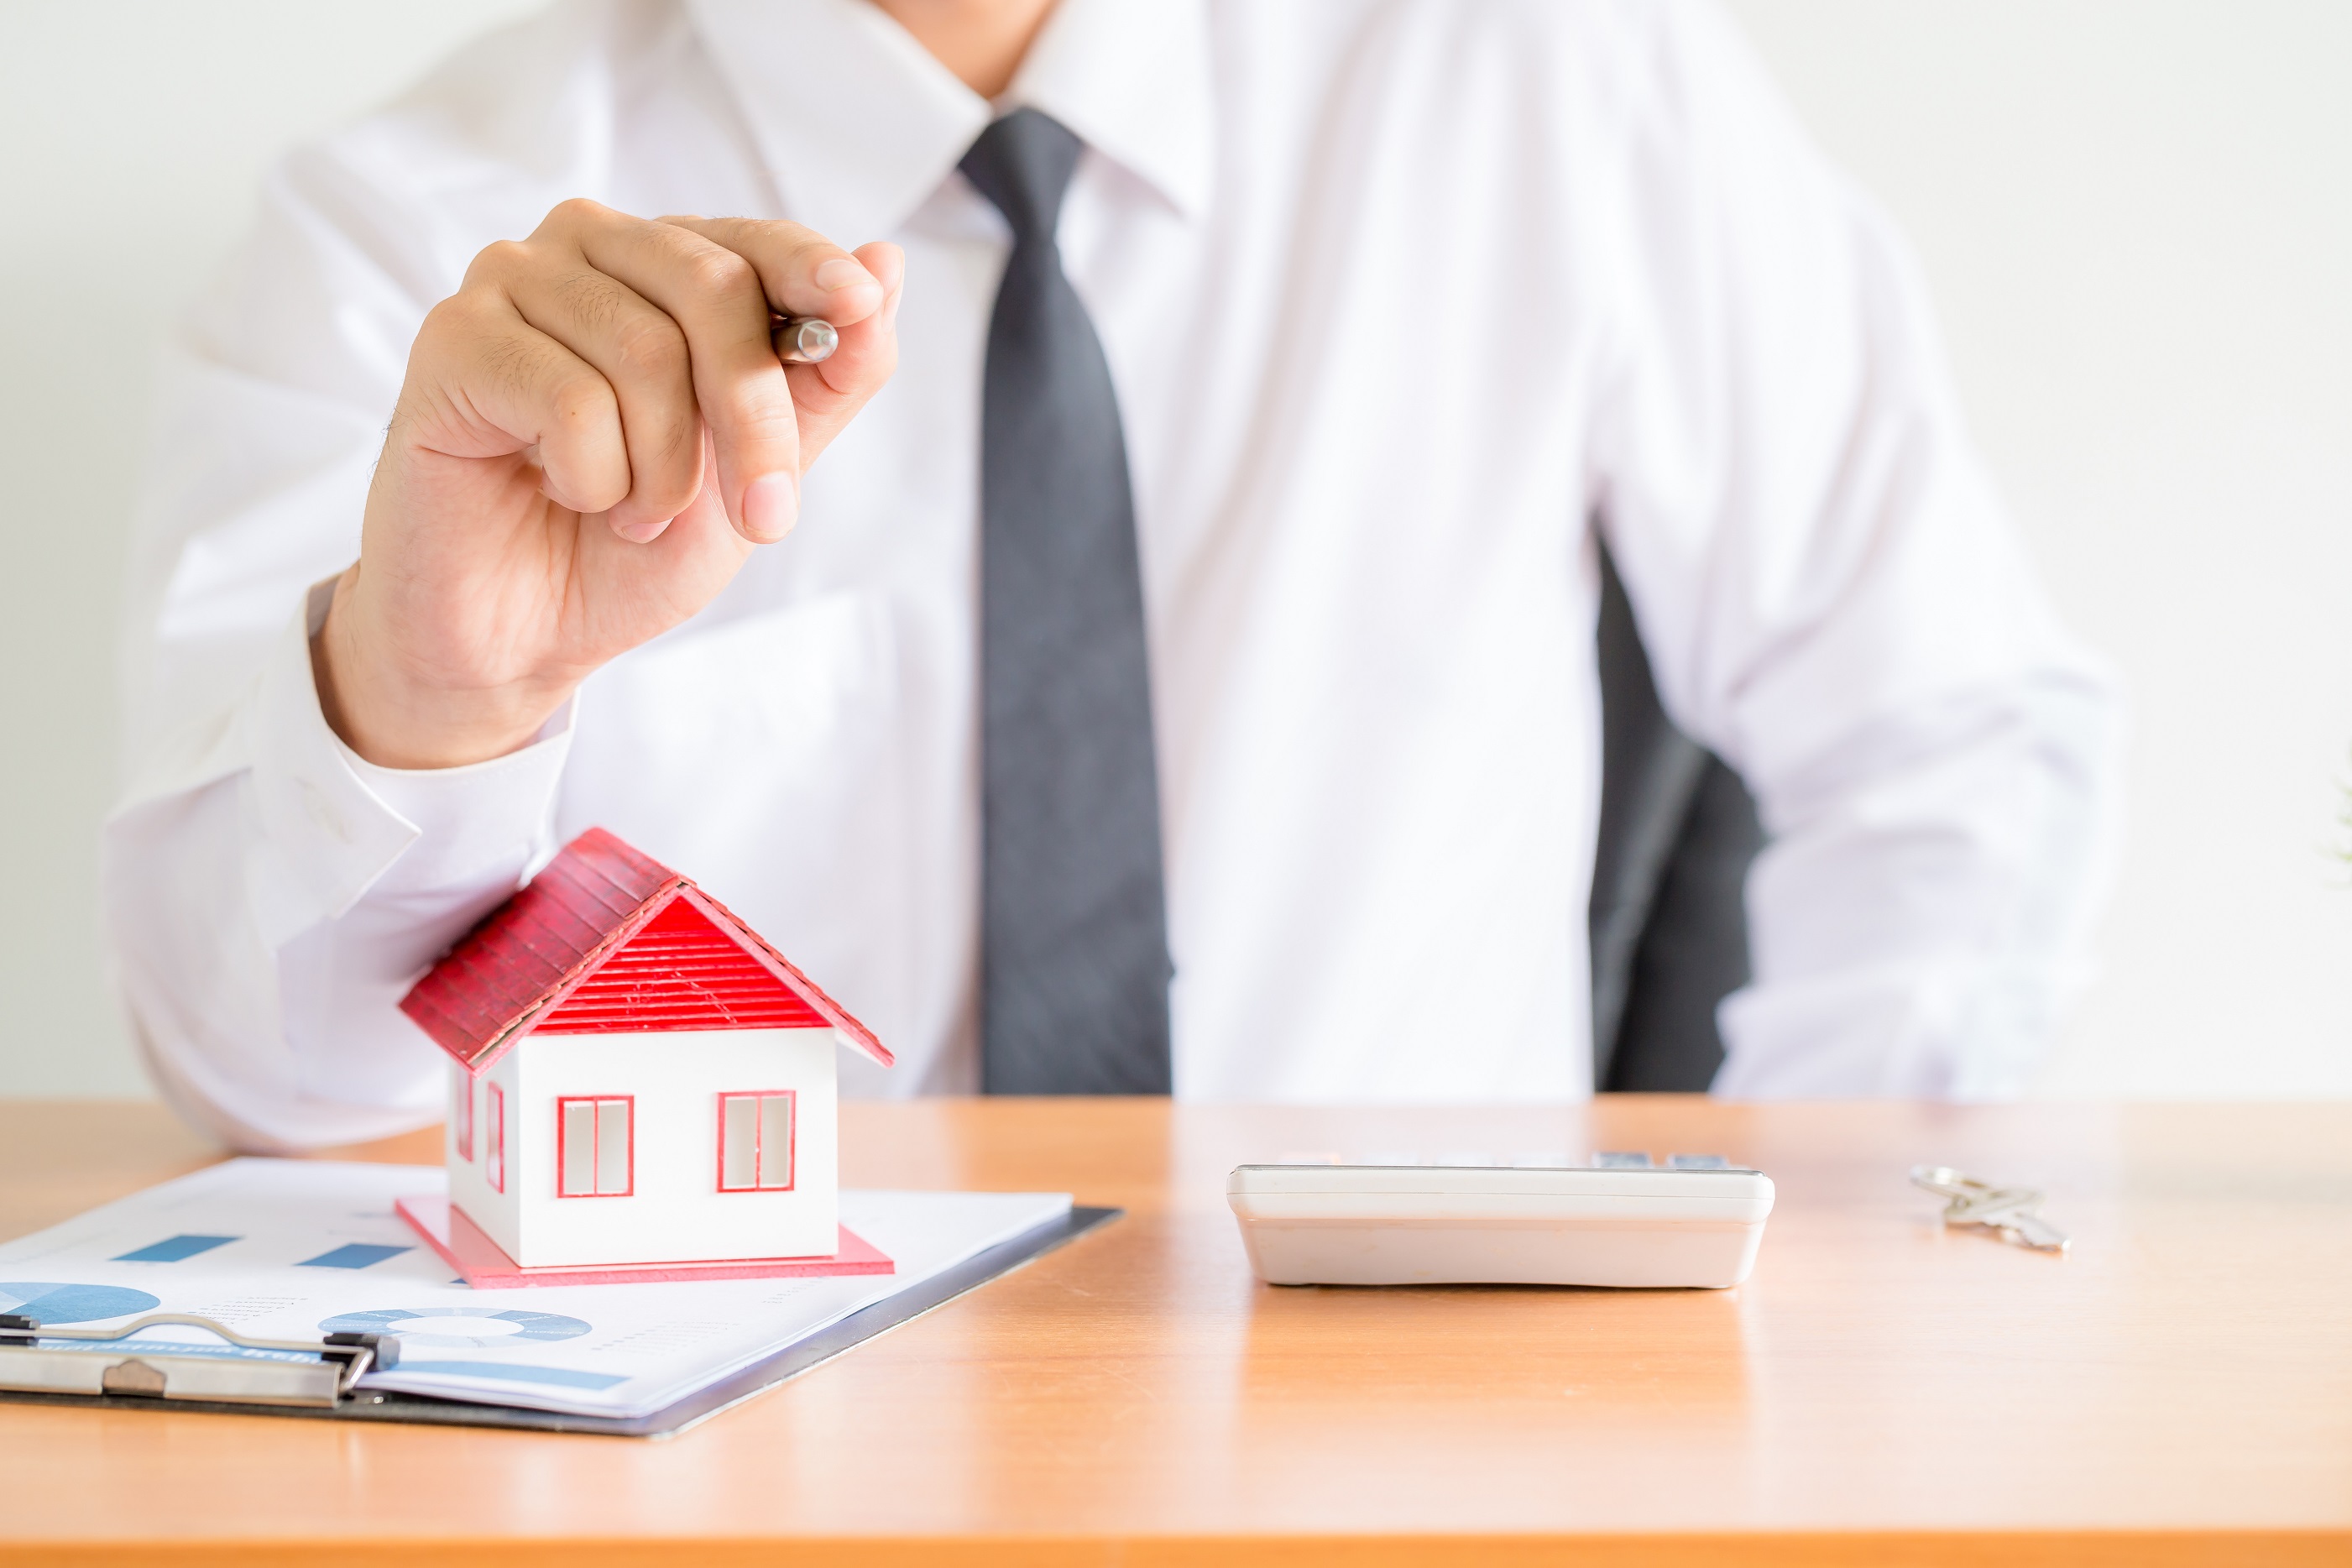 ¿Piensas comprar una vivienda con un crédito hipotecario? 4 datos a considerar